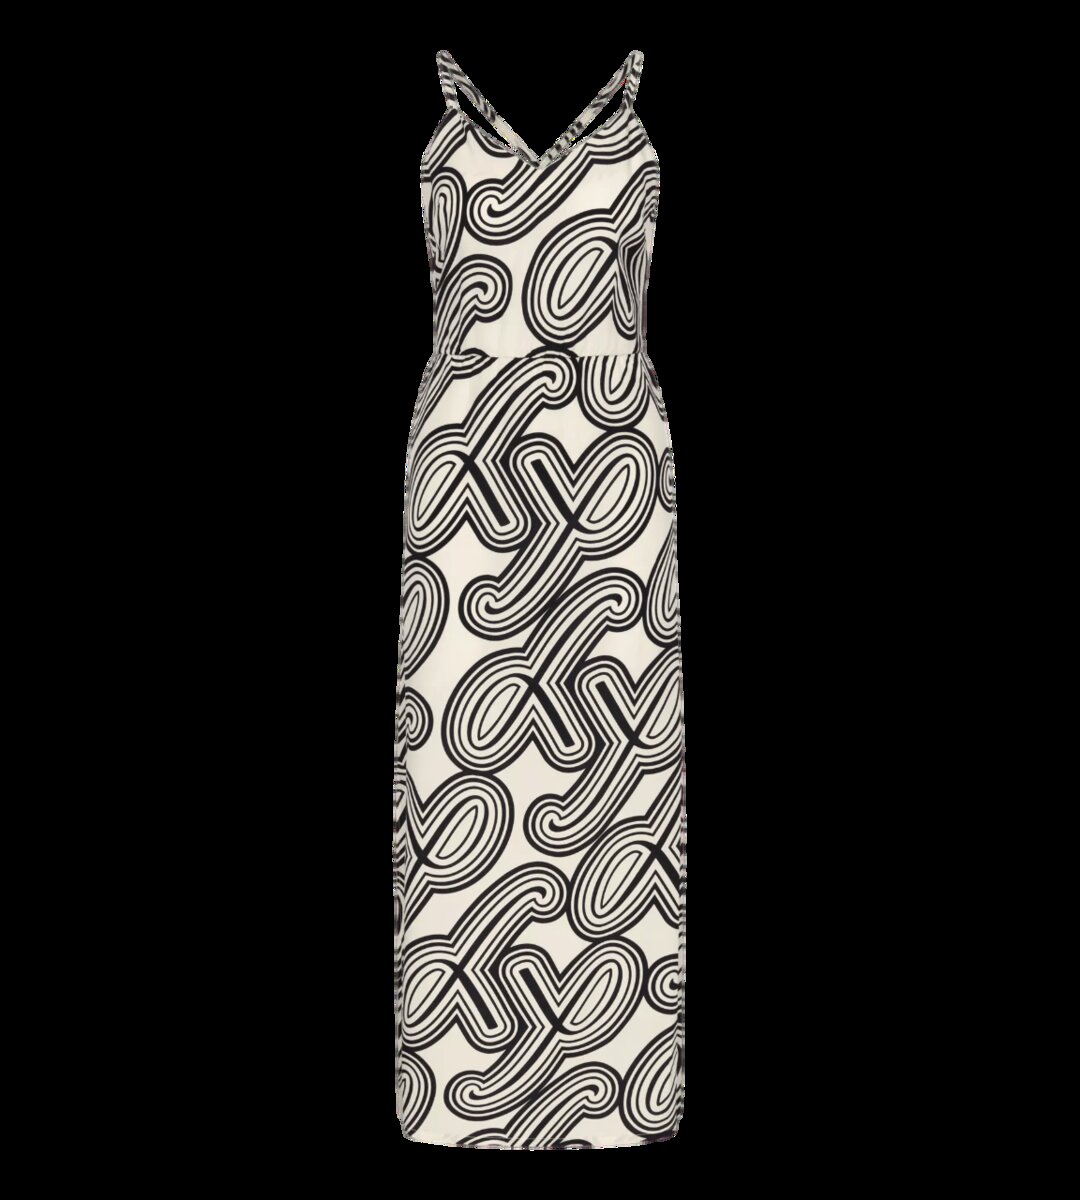 Plážové šaty Summer Breeze Maxi Dress, světlá kombinace bílé (M015) 0036 i147_21741797